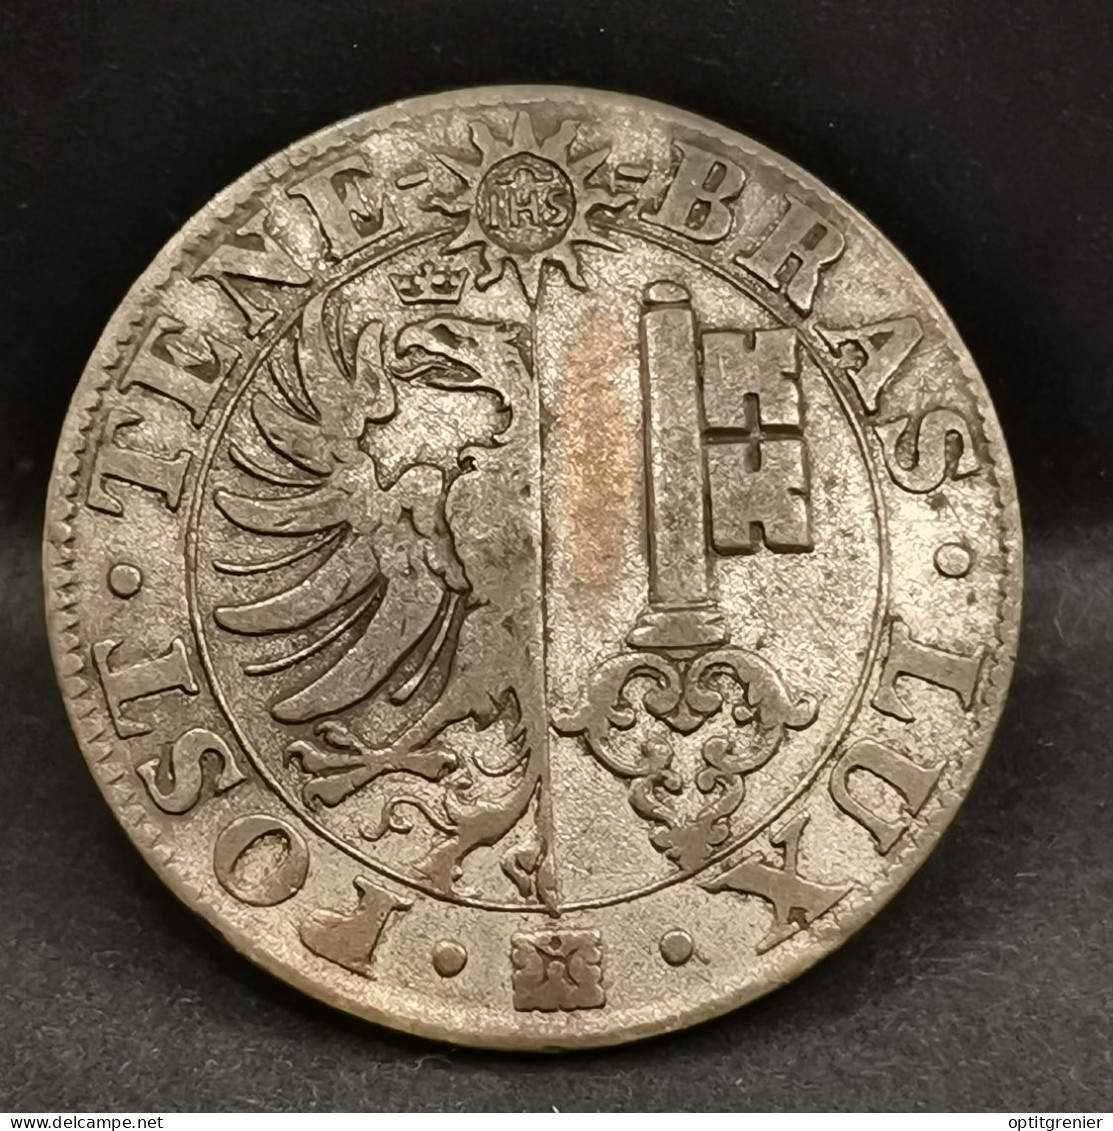 25 CENTIMES 1839 BILLON ARGENT CANTON DE GENEVE SUISSE / SWITZERLAND - Monedas Cantonales